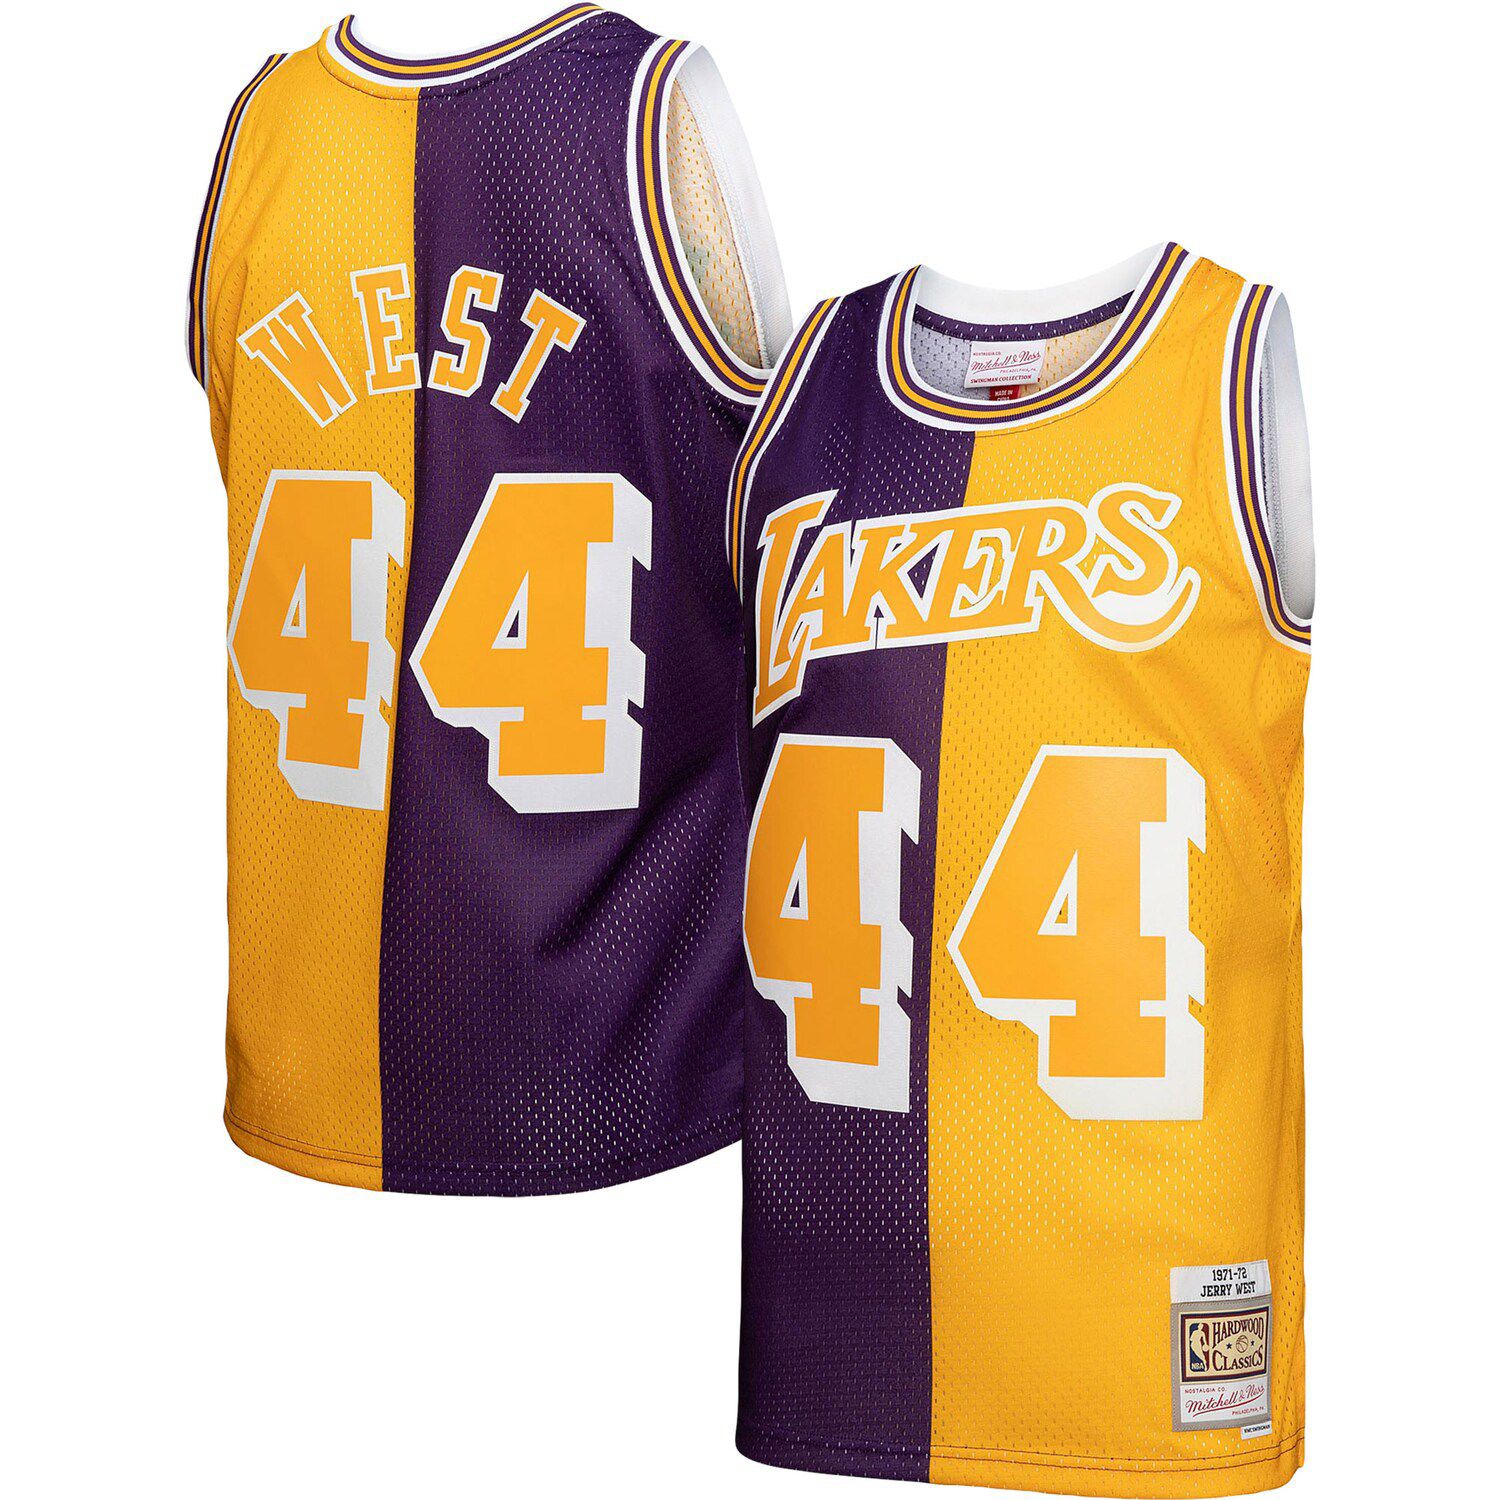 Kareem Abdul-Jabbar Los Angeles Lakers Mitchell & Ness Big & Tall Hardwood Classics  Jersey - Gold